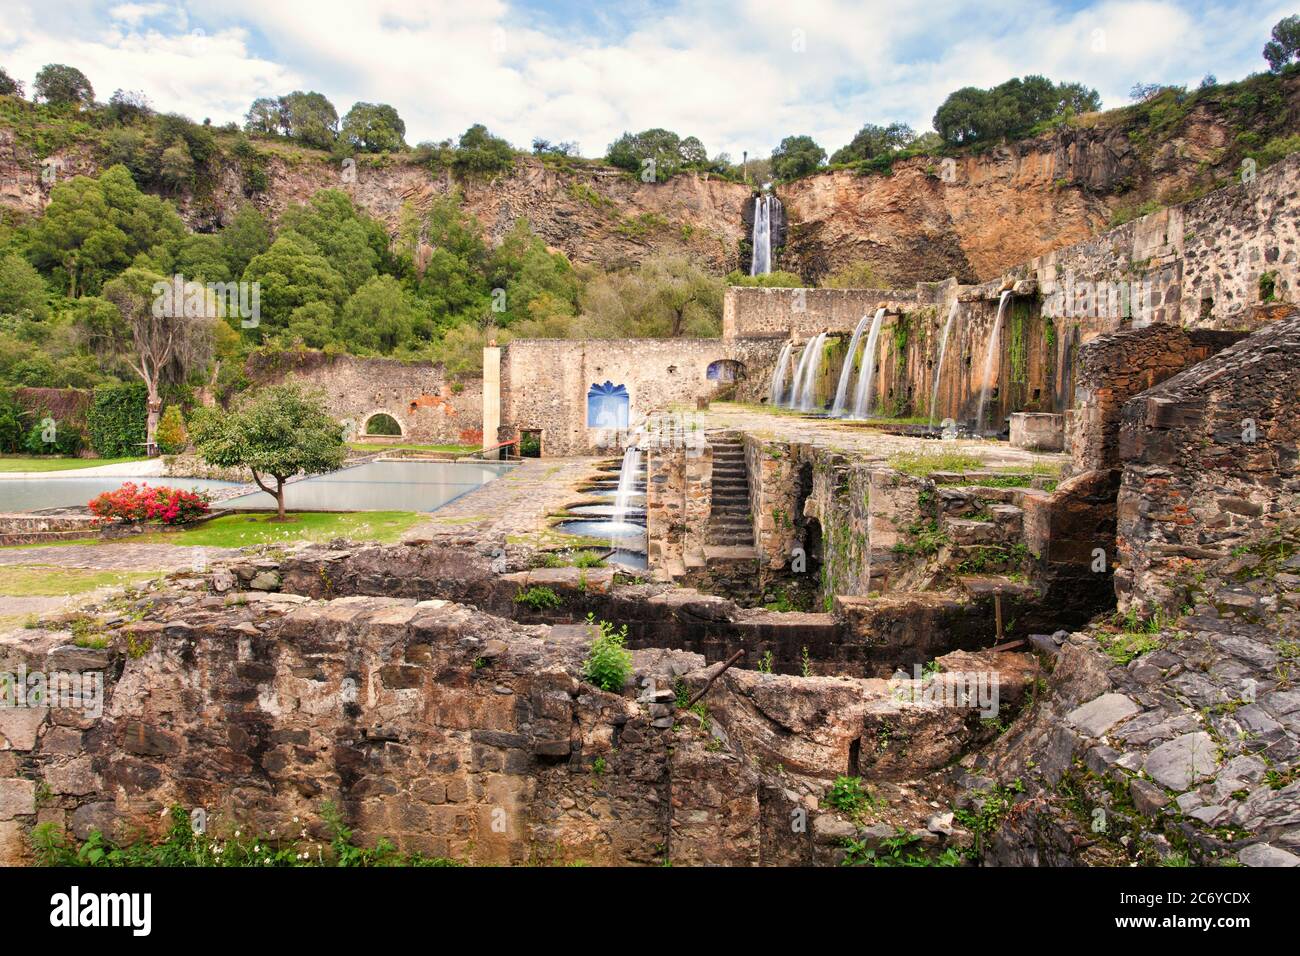 Waterfalls and gardens, Ex Hacienda Santa María Regla, Hidalgo, Mexico. Stock Photo